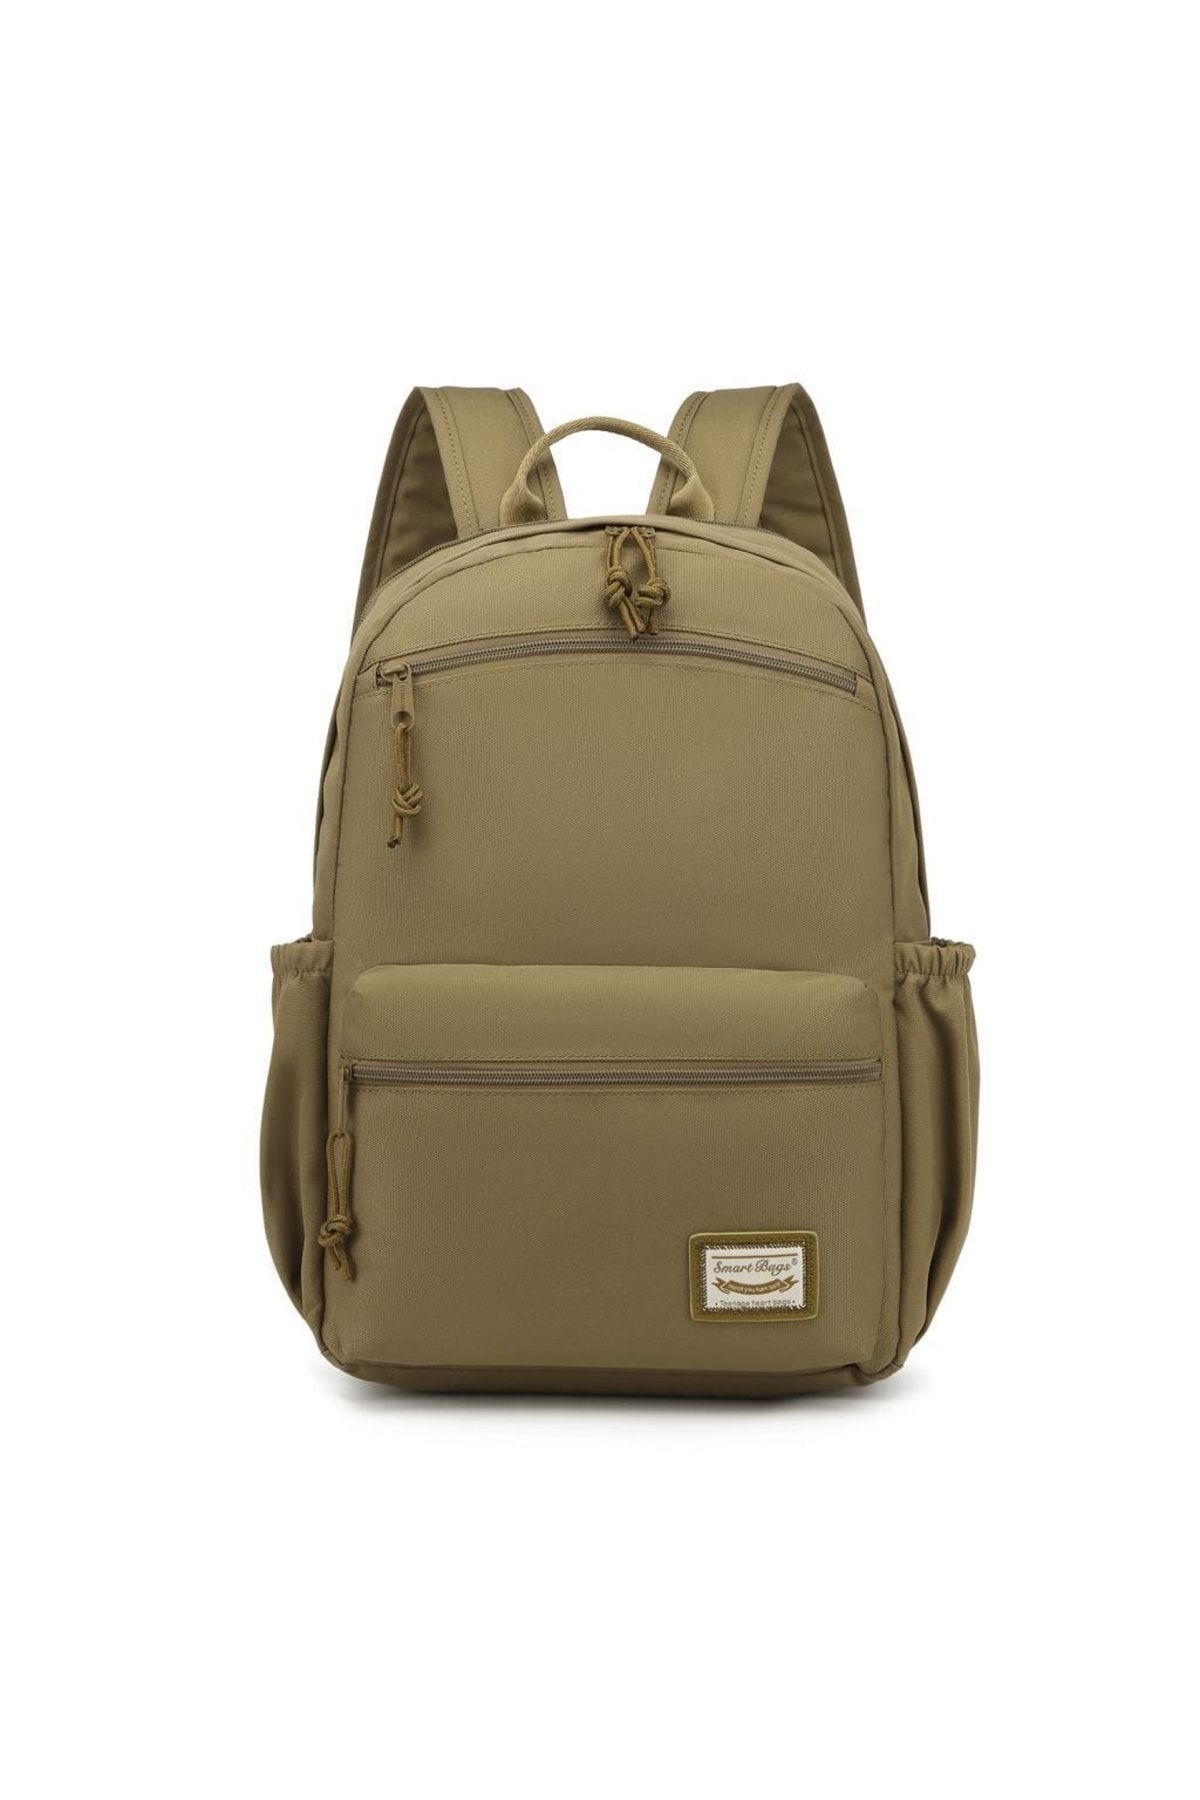 Smart Bags Algstore (Smart Bags) Sırt Çantası Okul Boyu Laptop Gözlü 3160